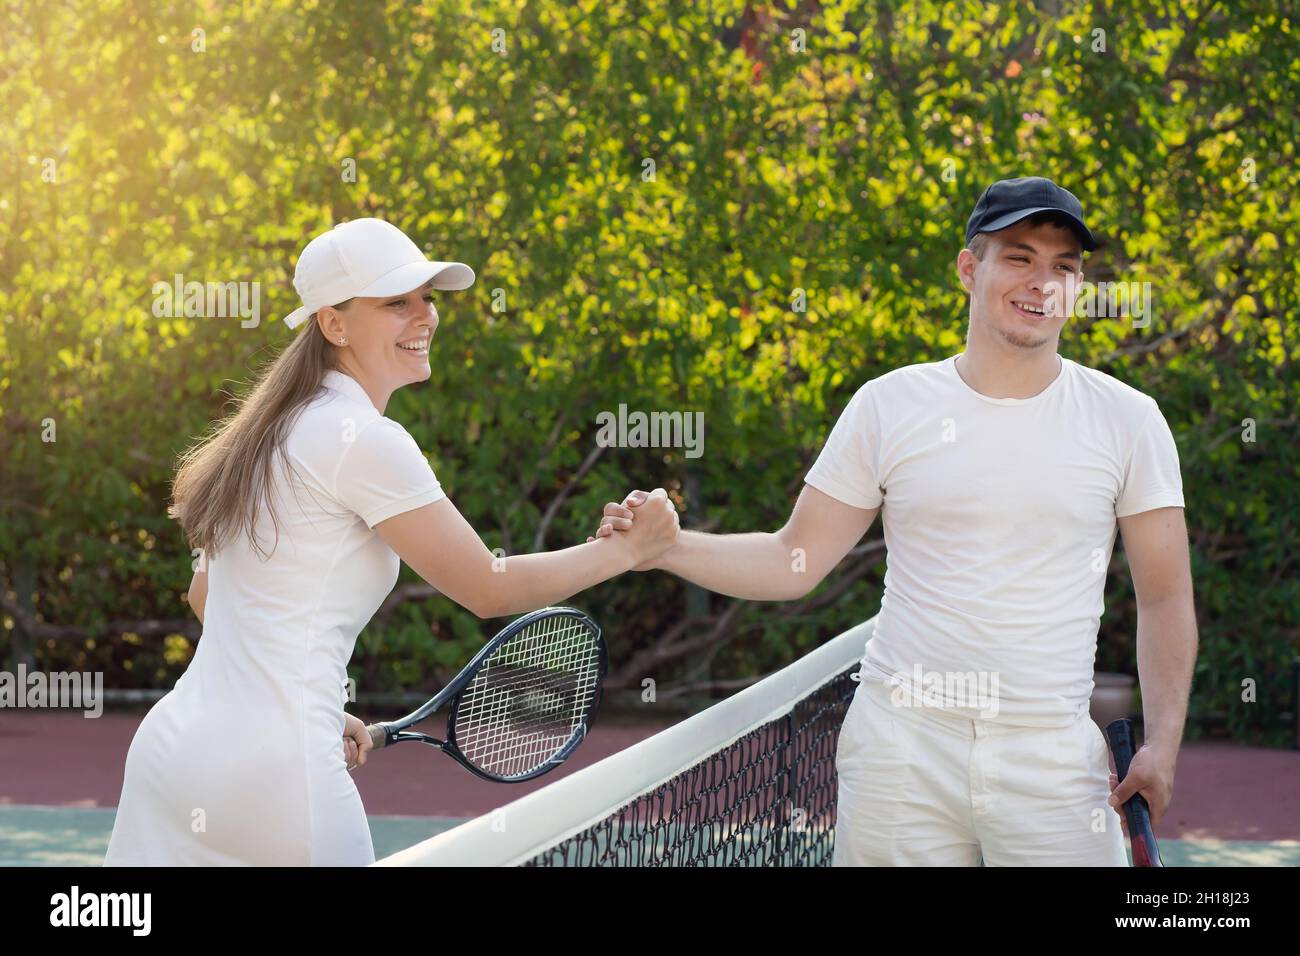 apretón de manos después de un partido de tenis, un joven blanco y una mujer. hermano y hermana jugaban un partido de tenis. Foto de stock